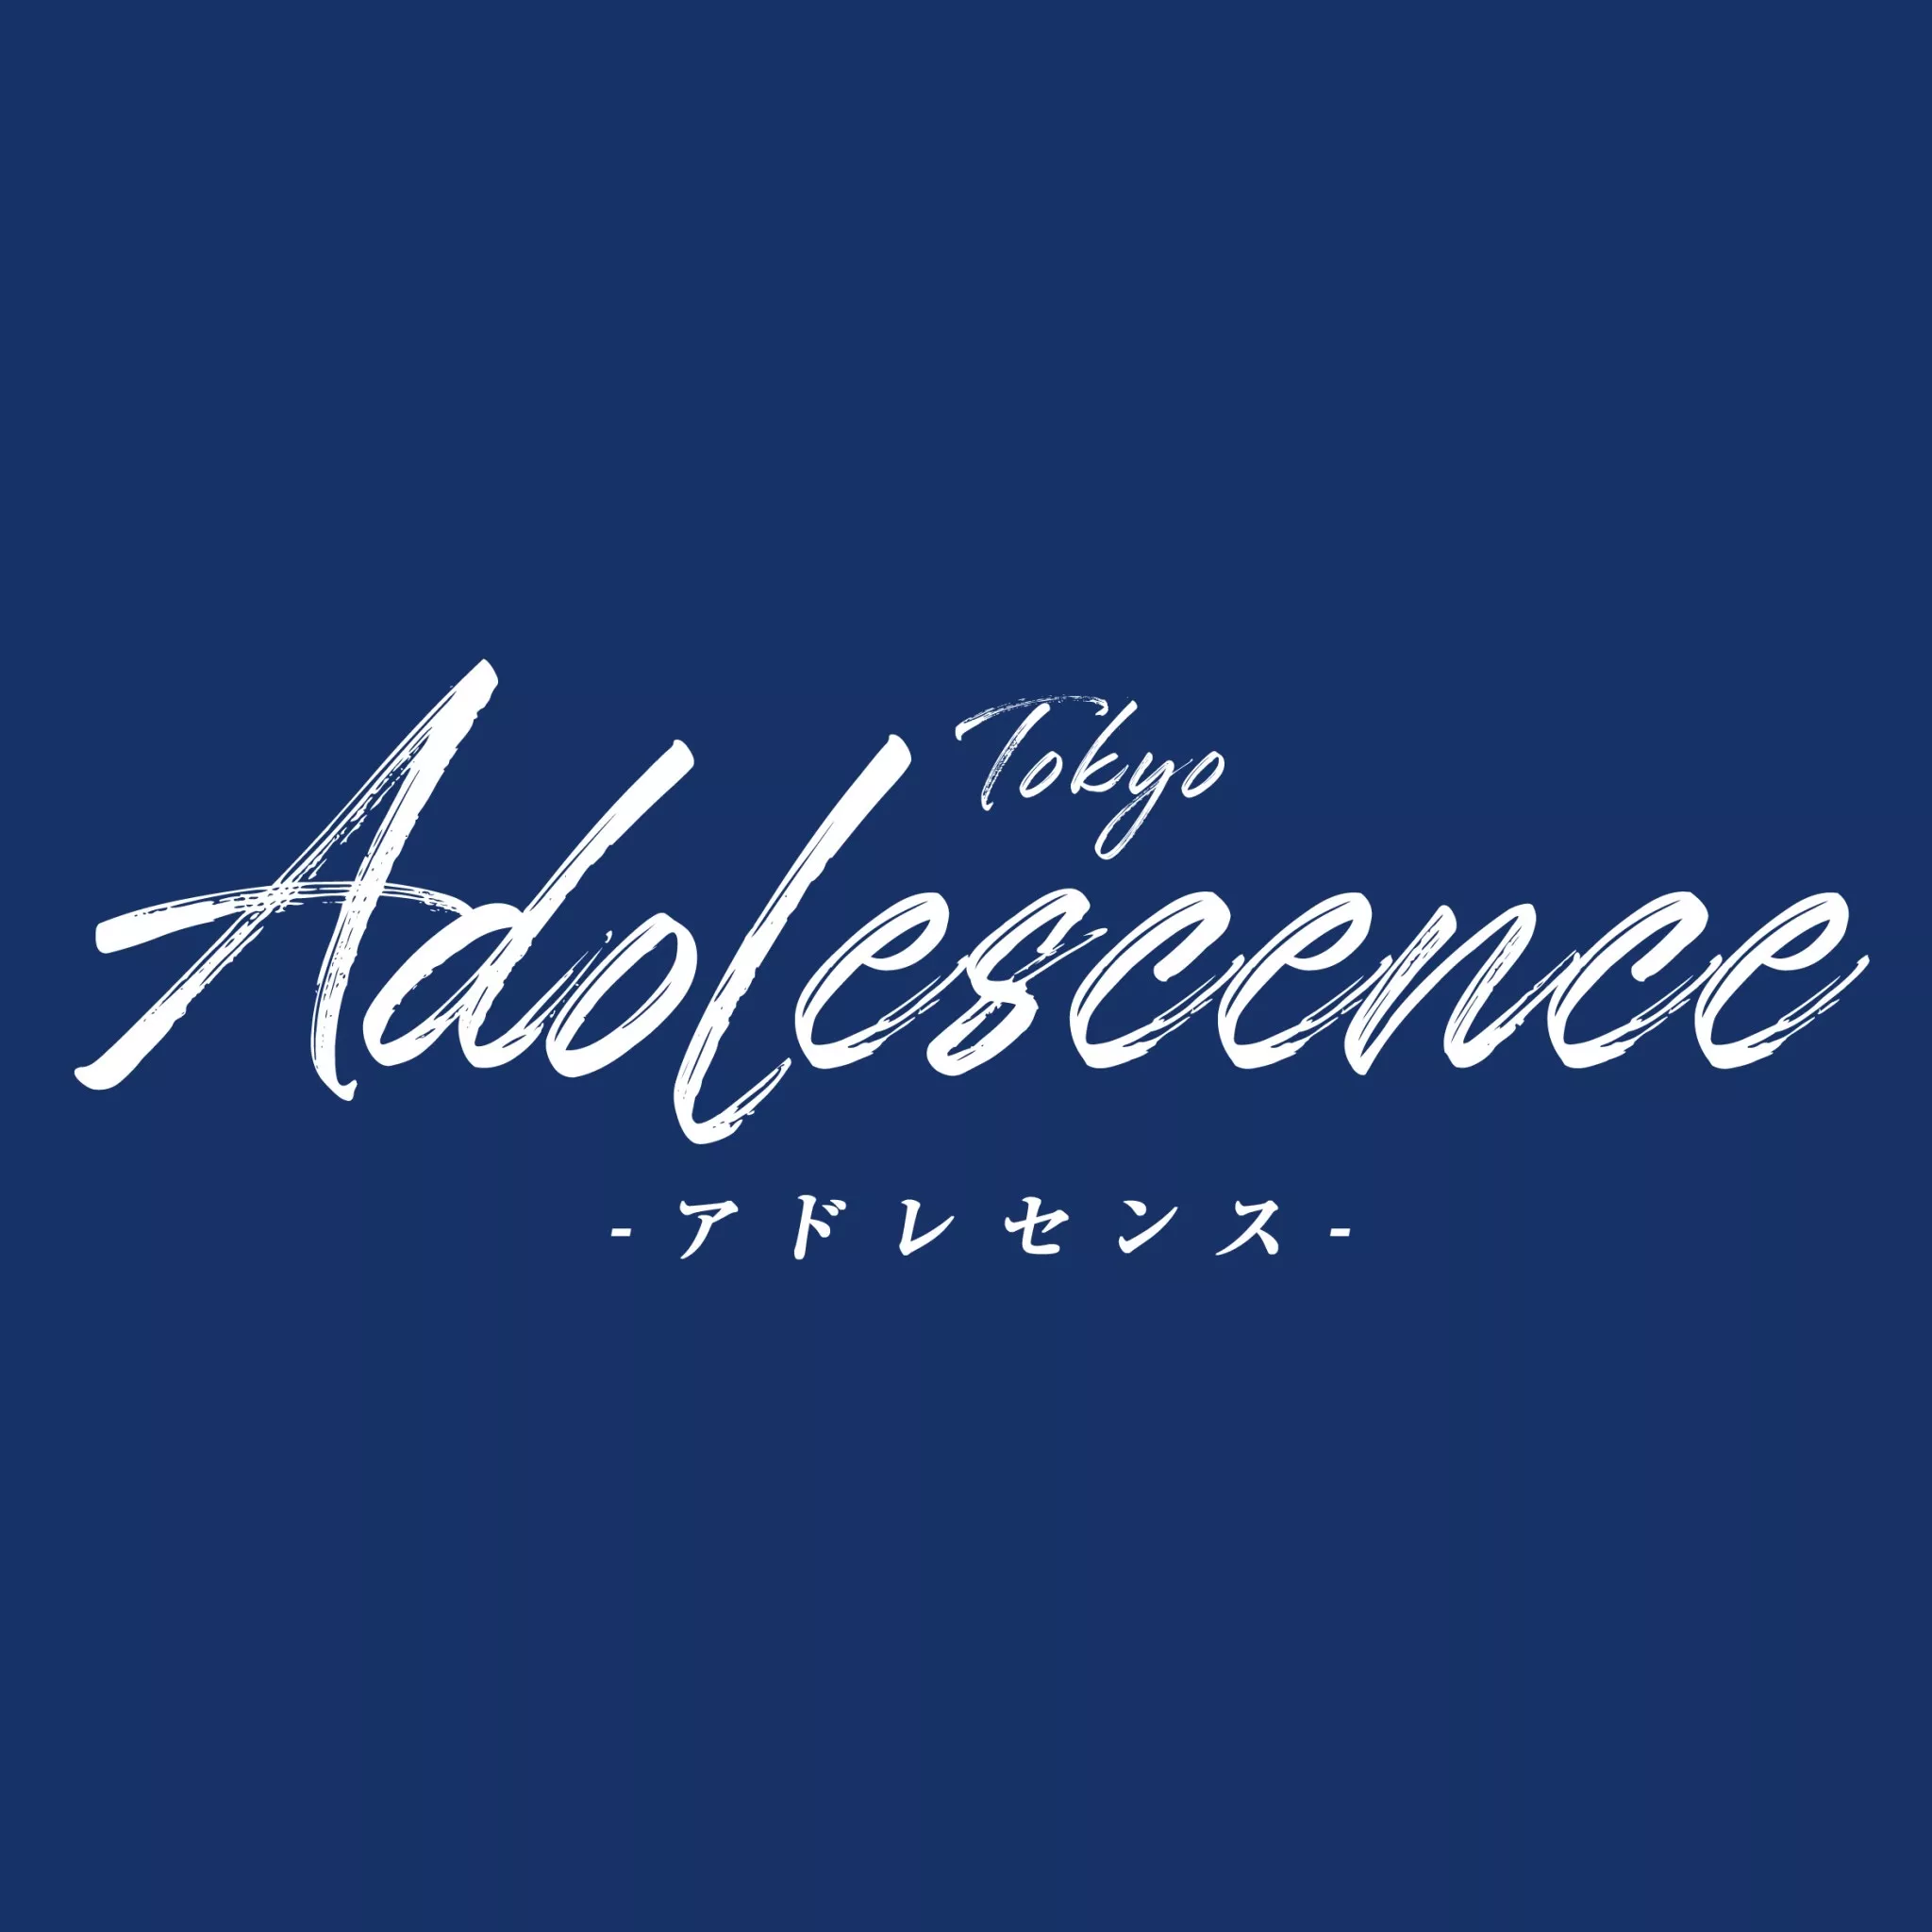 Tokyo Adolescence